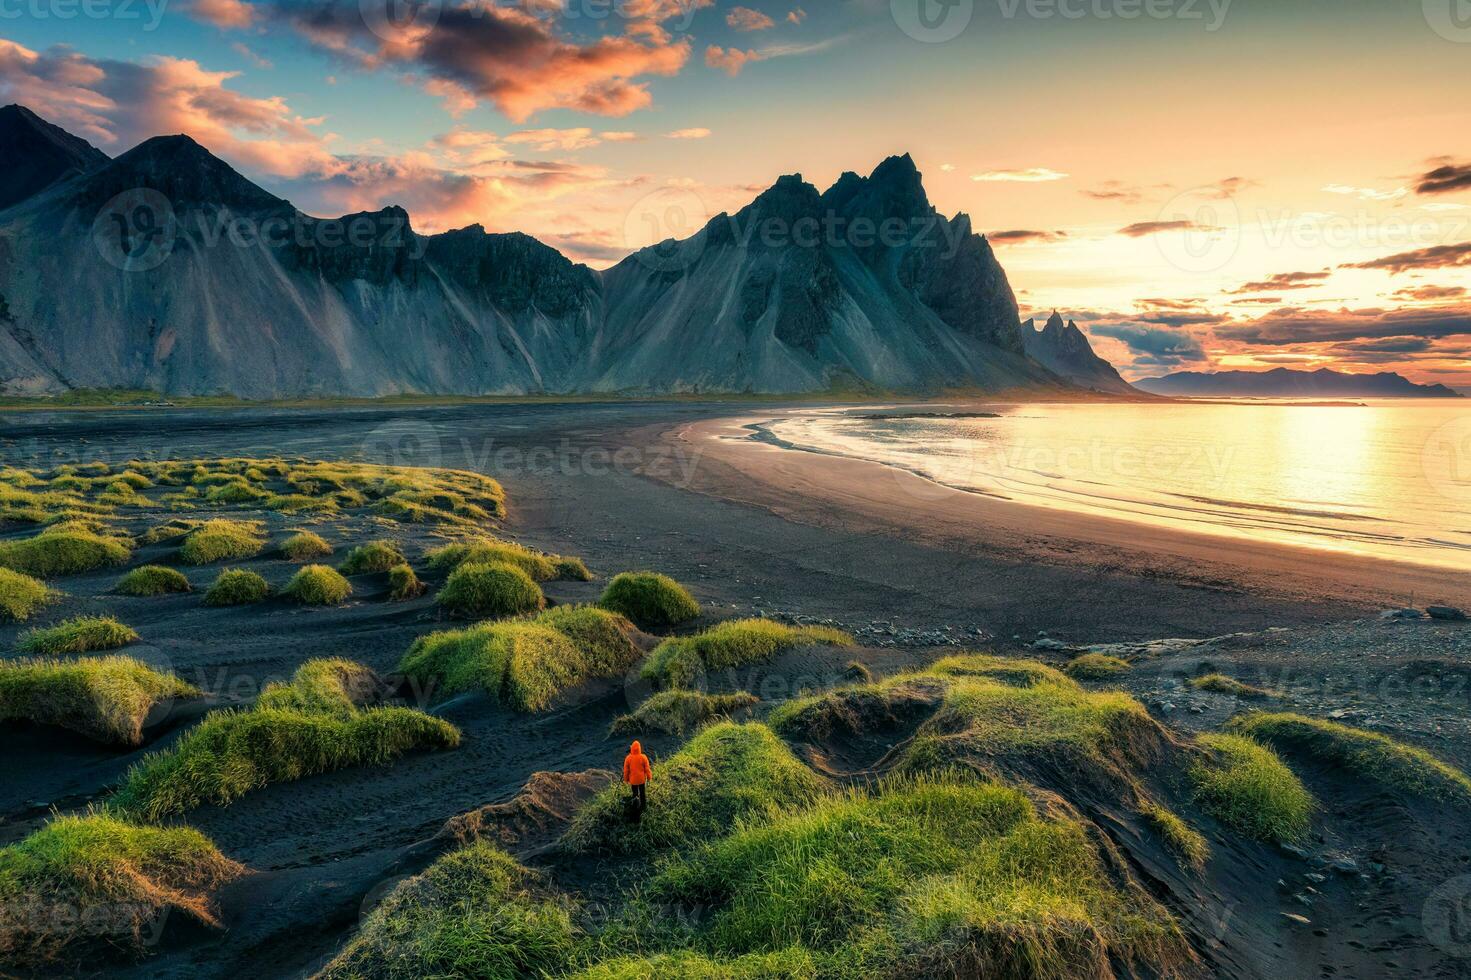 Sonnenaufgang Über Vestrahorn Berg auf schwarz Sand Strand im stokksnes Halbinsel beim Island foto